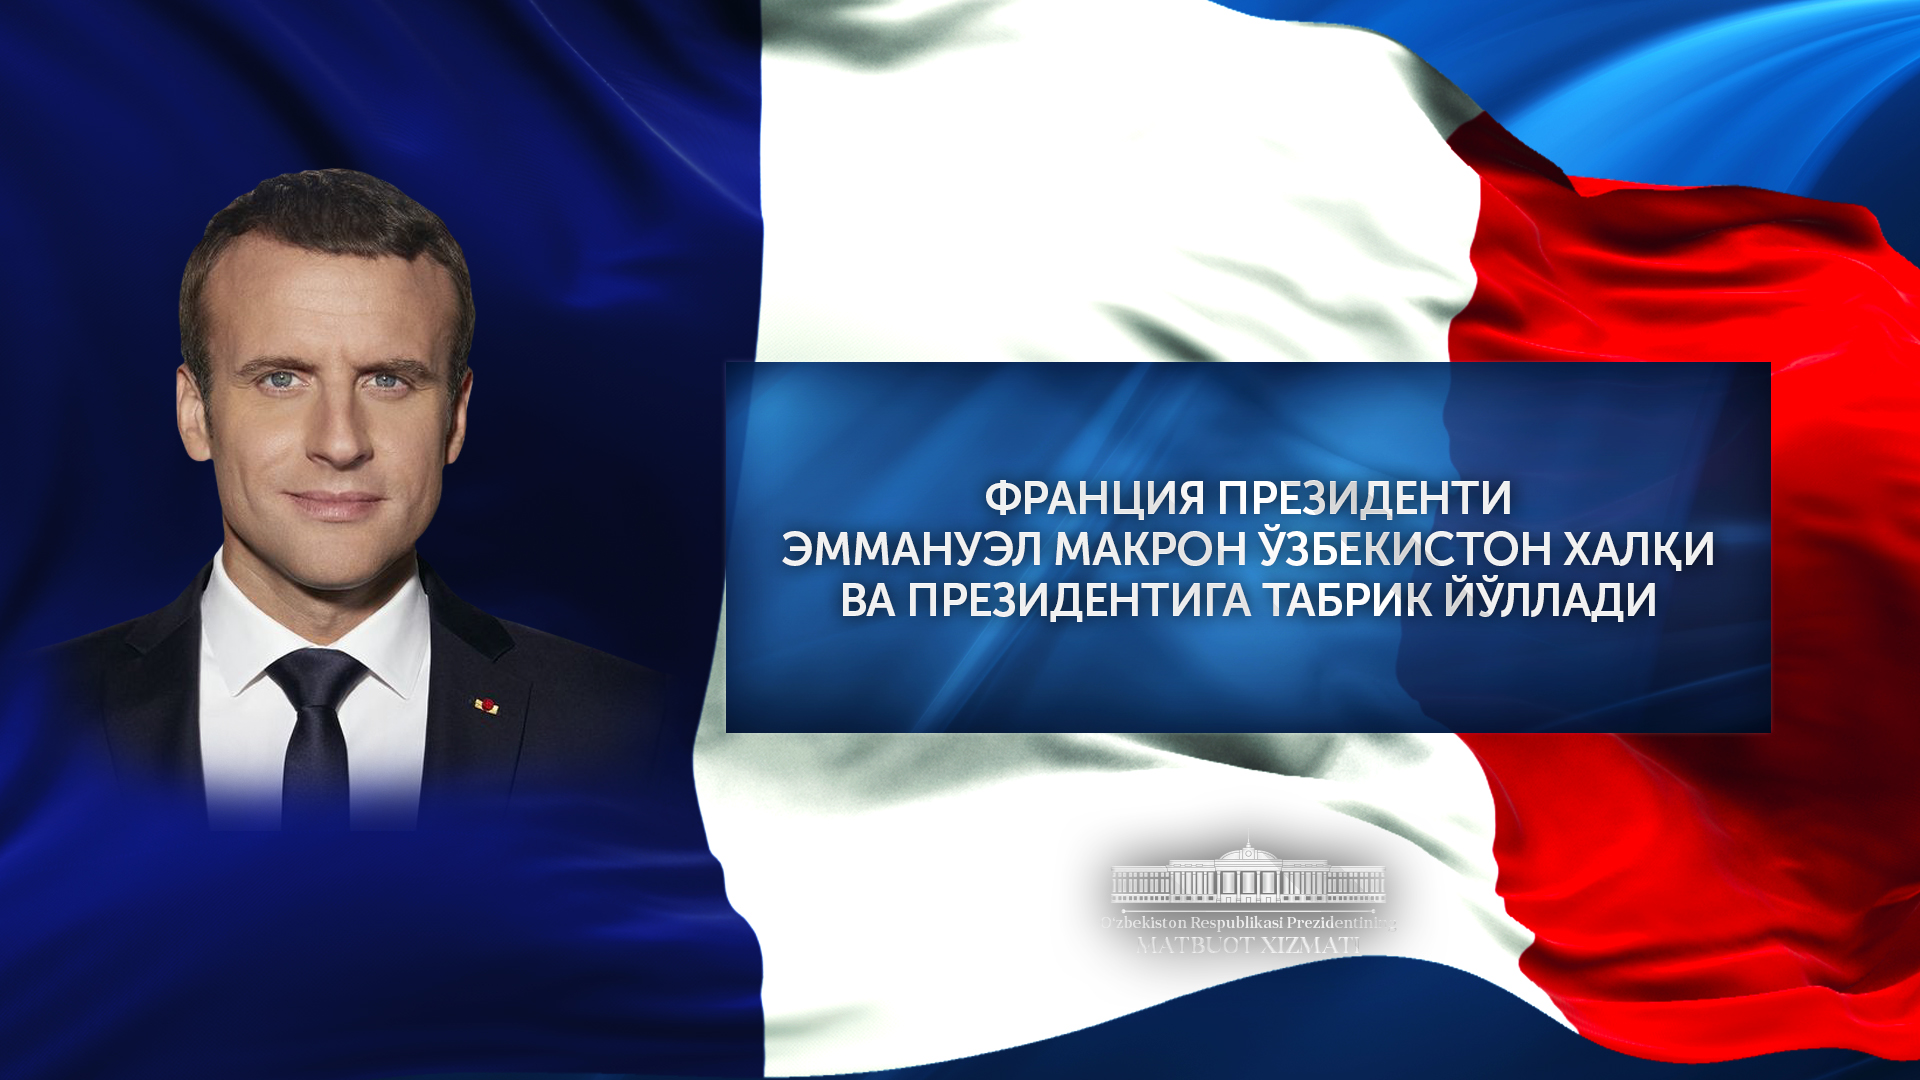 Emmanuel Makron Prezident Shavkat Mirziyoyevni Mustaqillik kuni bilan tabrikladi